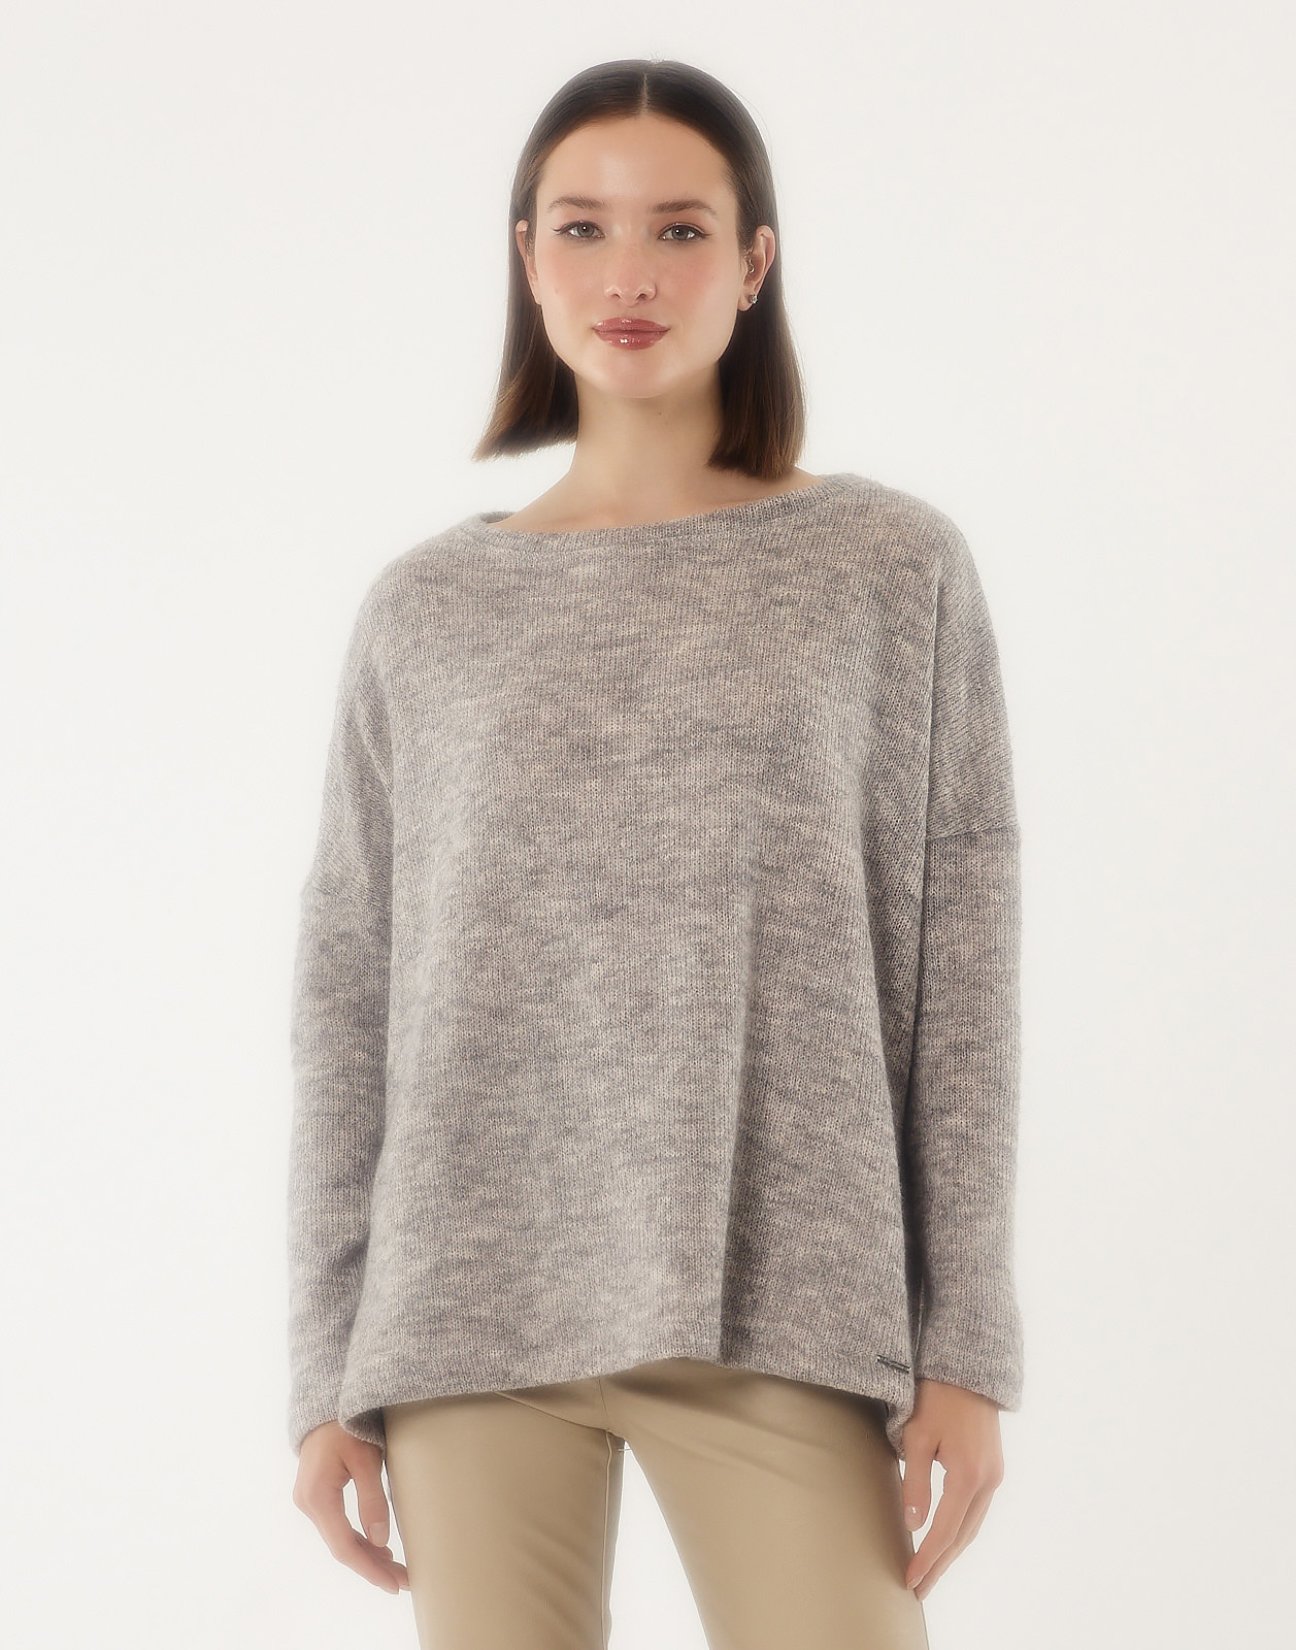 Oversized knit blouse